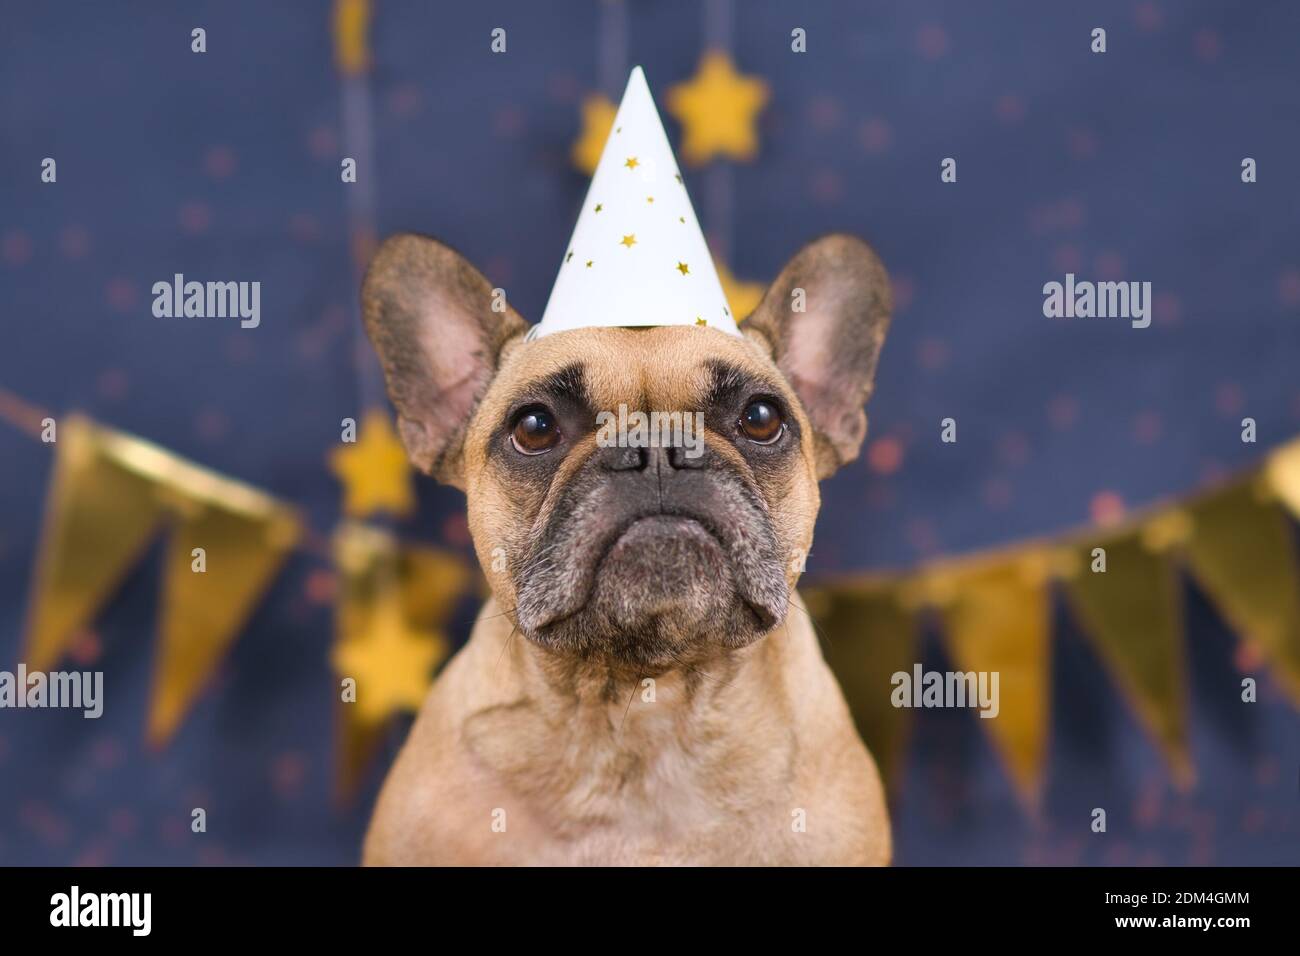 Joli chien Bulldog français portant un chapeau de fête à l'avant d'arrière-plan bleu avec guirlandes dorées Banque D'Images